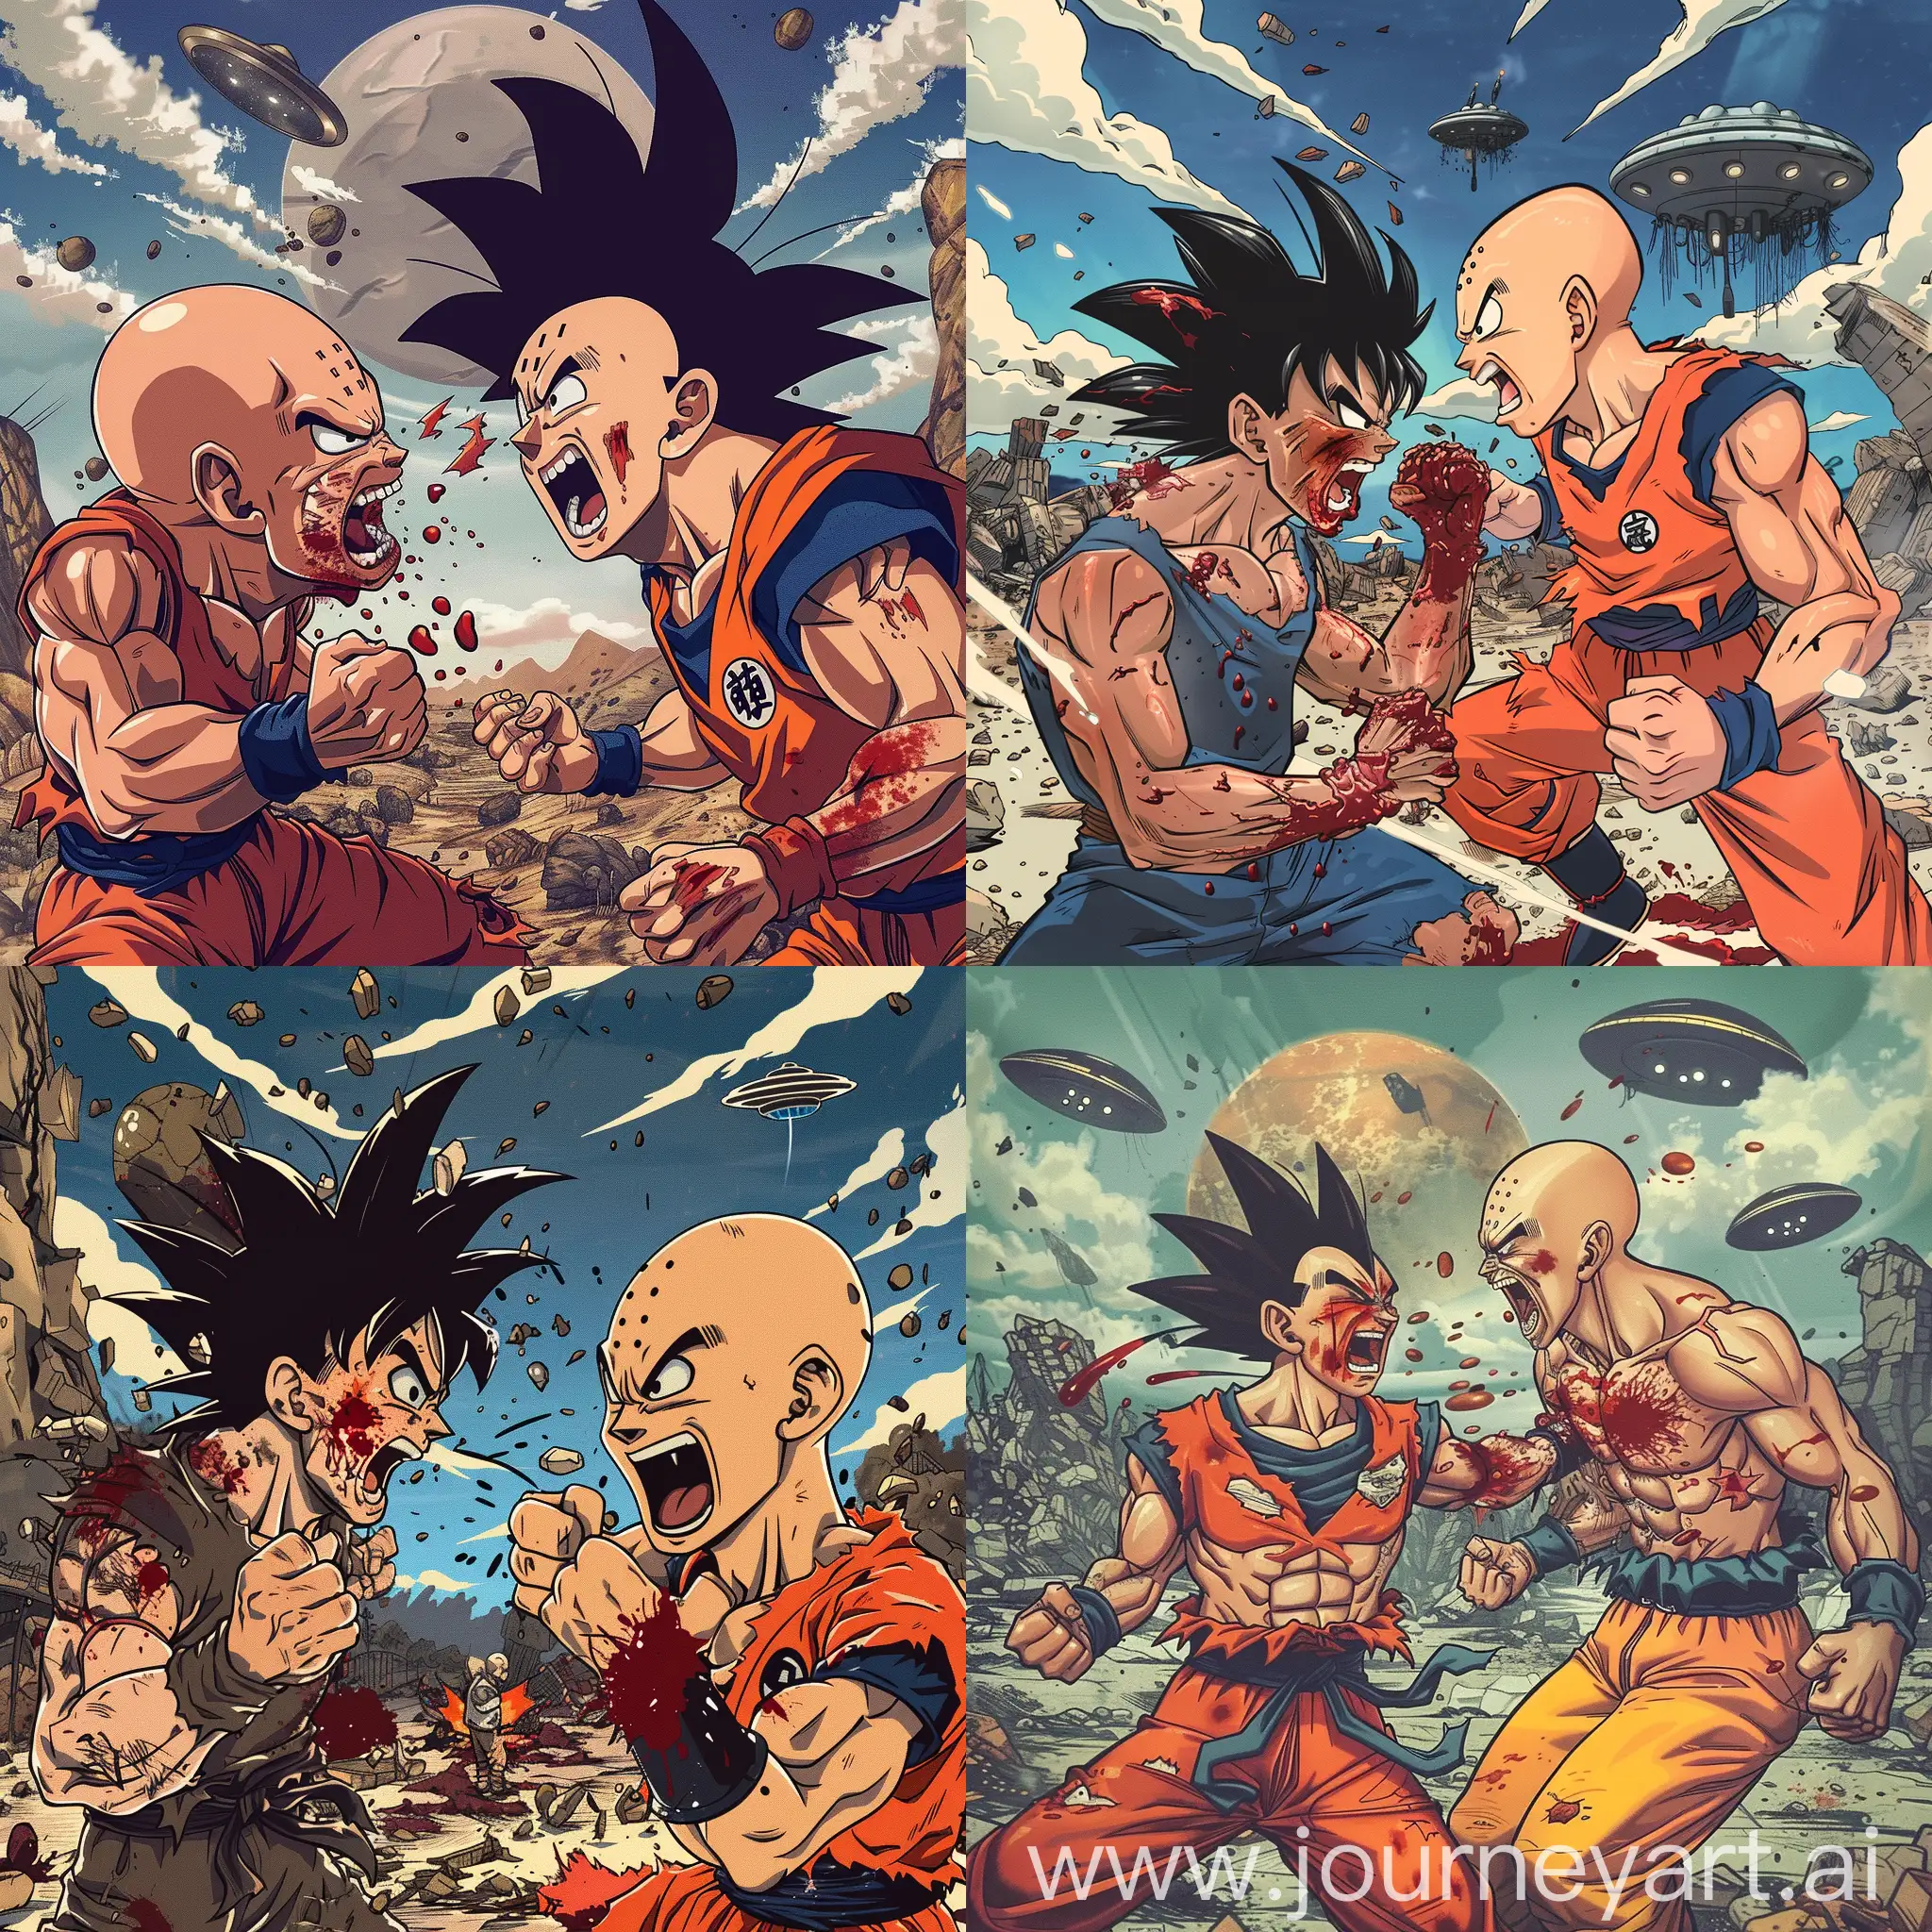 Epic-Battle-Goku-vs-Saitama-in-Apocalyptic-Ruins-with-UFOs